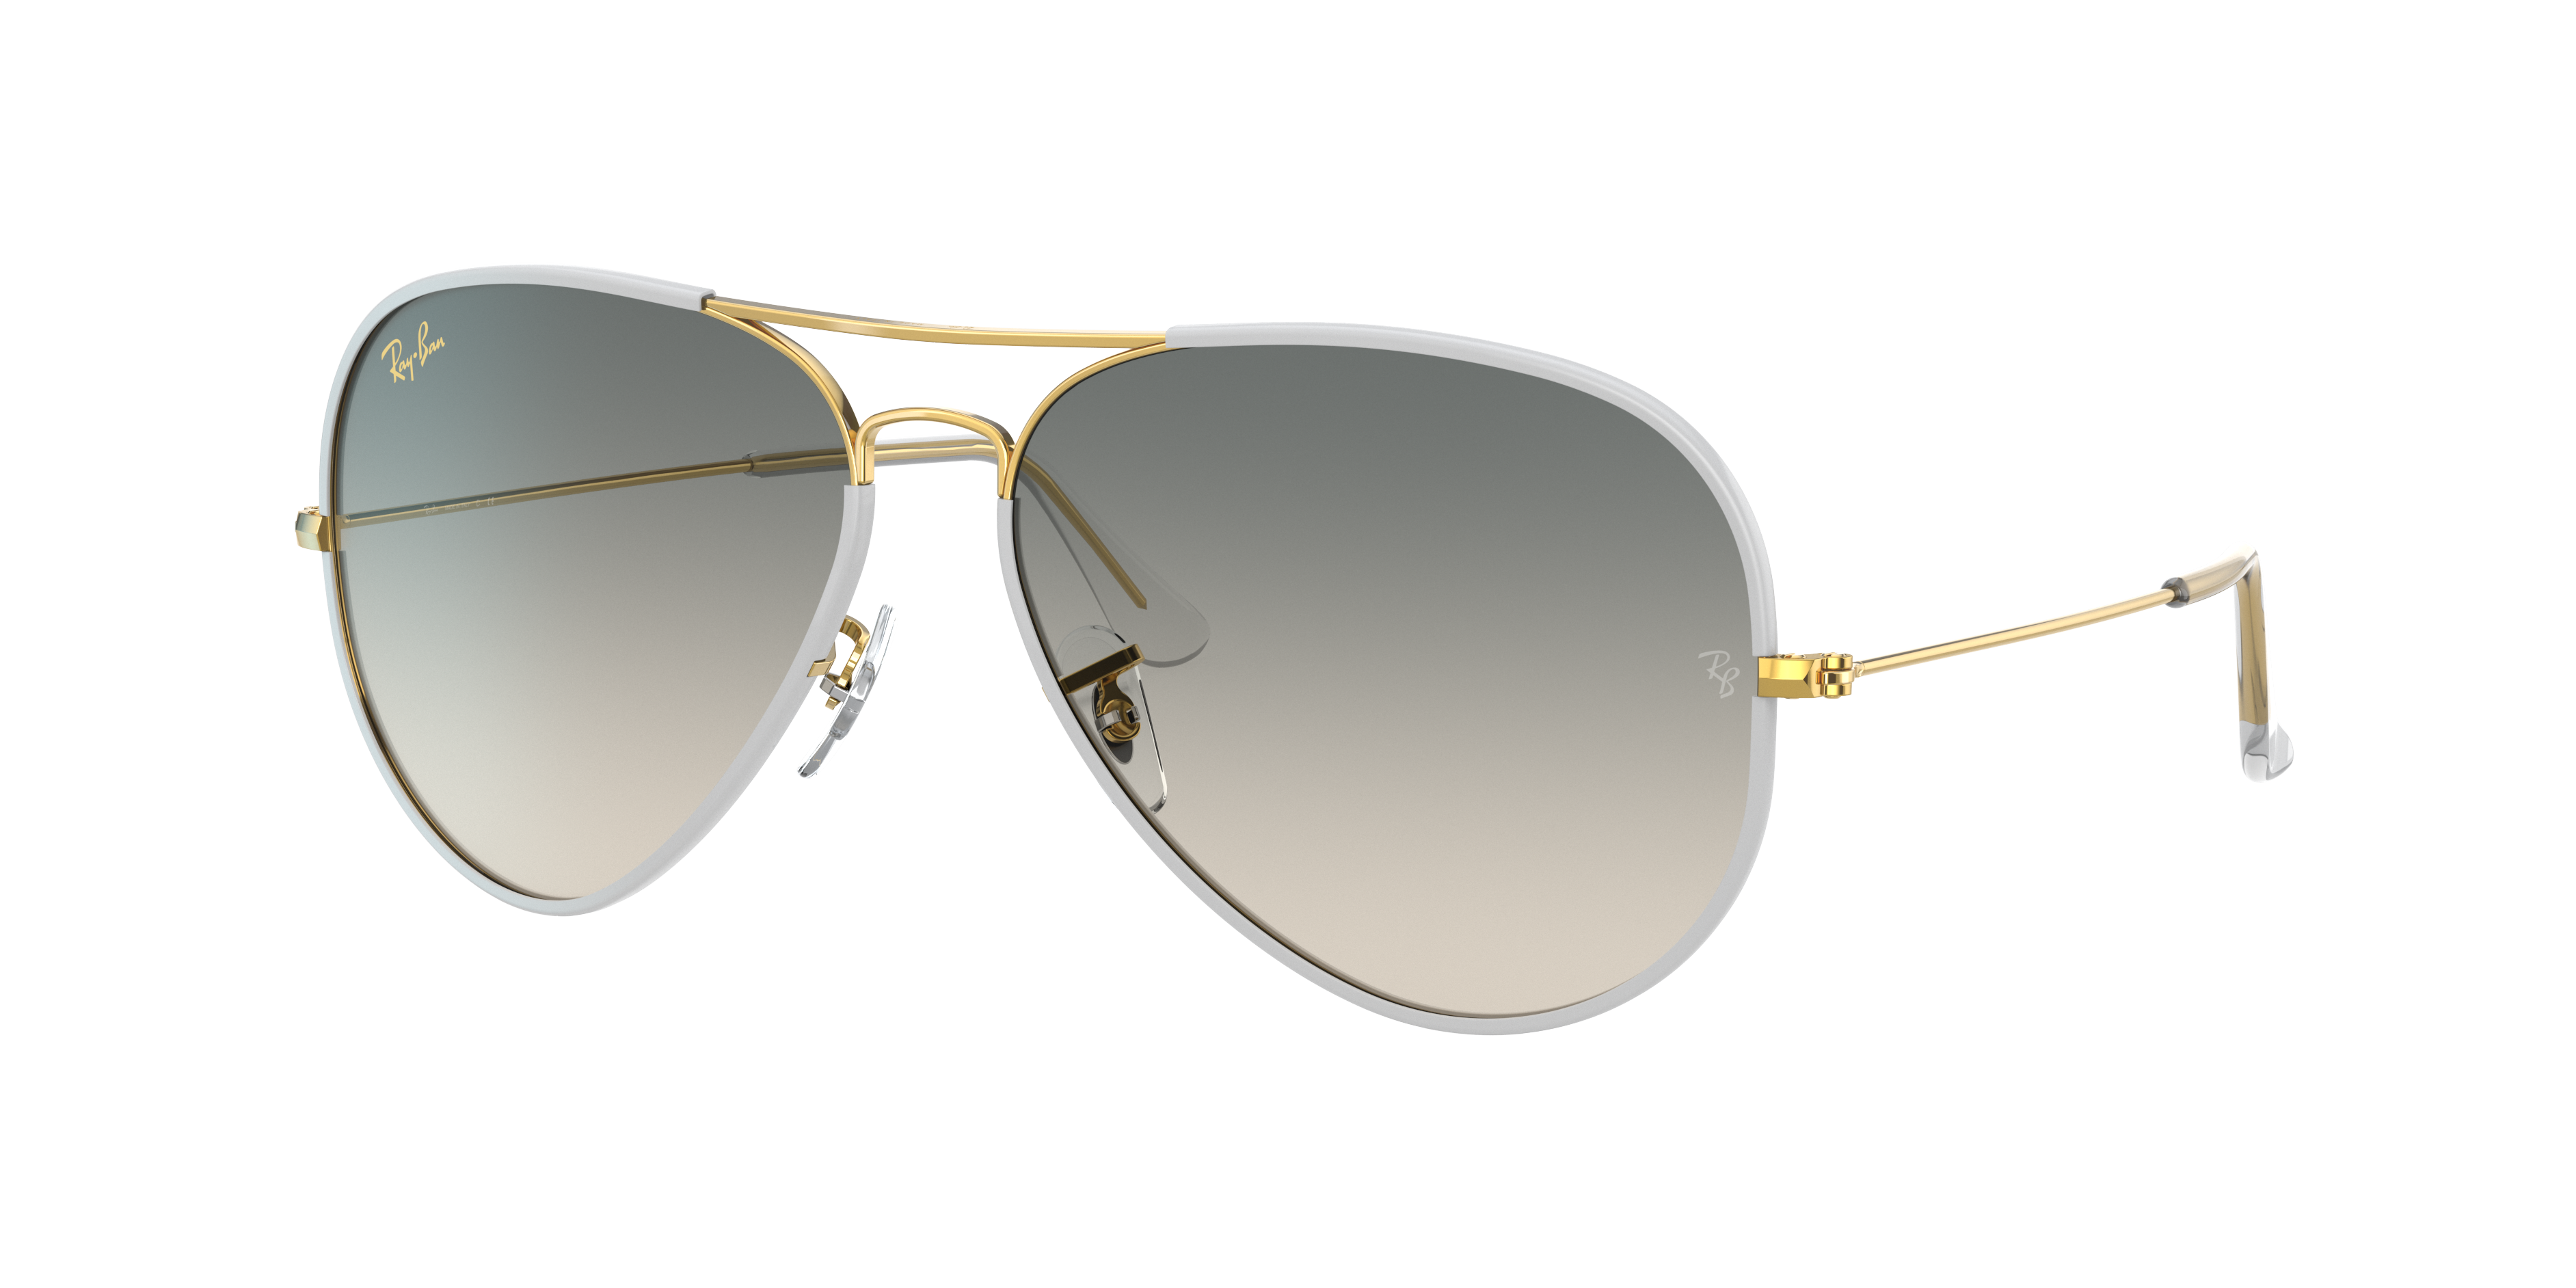 Ray Ban Aviator Full Color Legend Sunglasses Gold Frame Grey Lenses 58-14